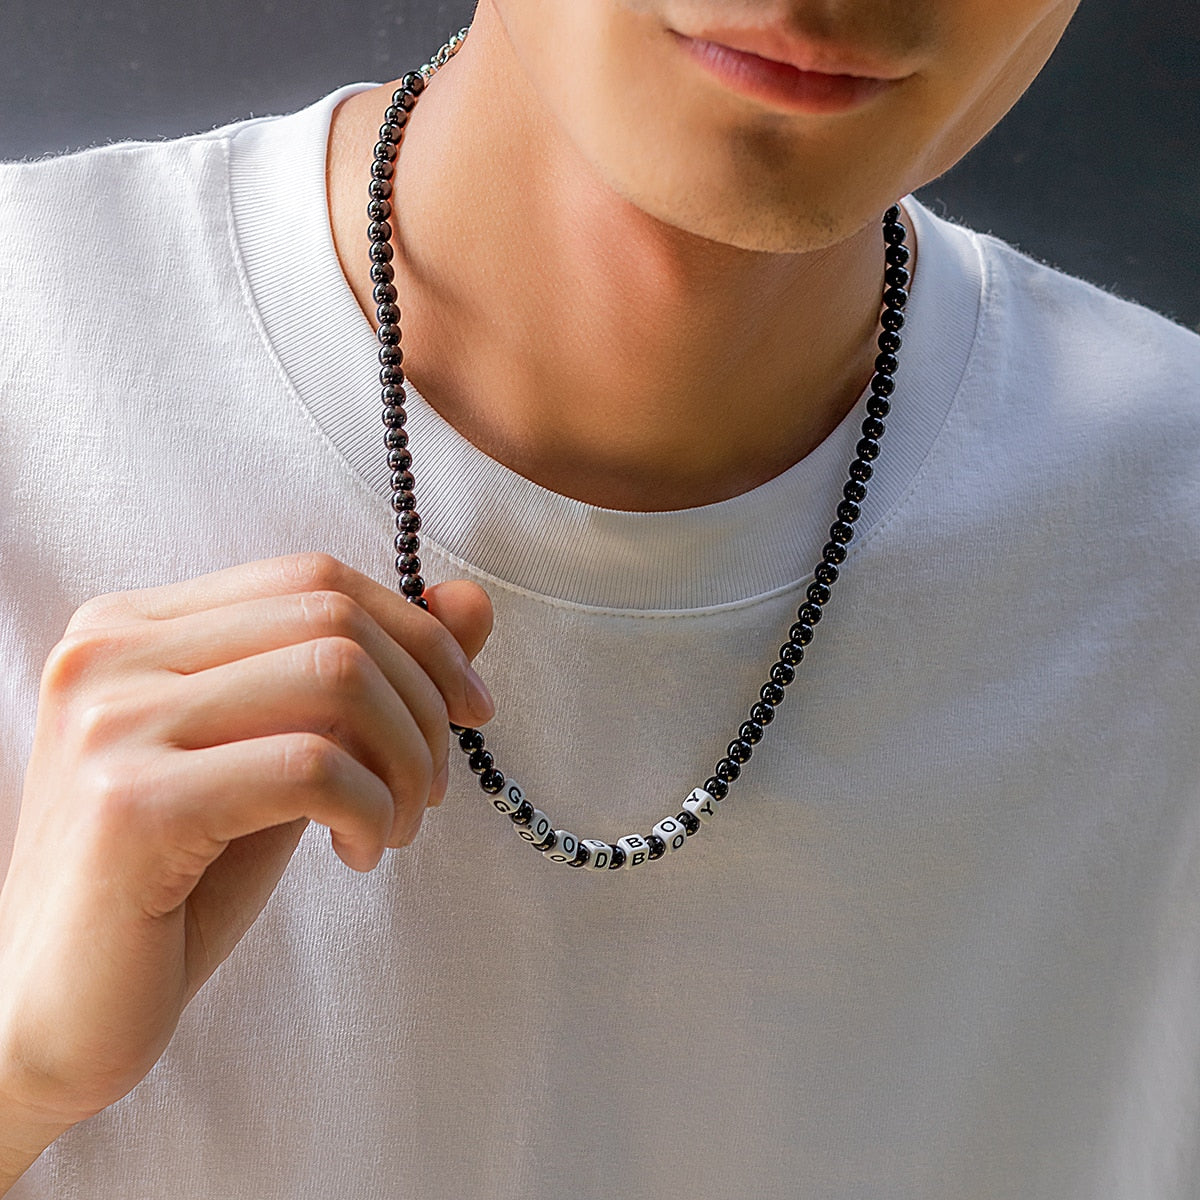 Ce collier en perles noires, avec ses lettres blanches formant "GOOD BOY", évoque l'élégance brute et l'esprit aventureux des marins sillonnant les vastes océans